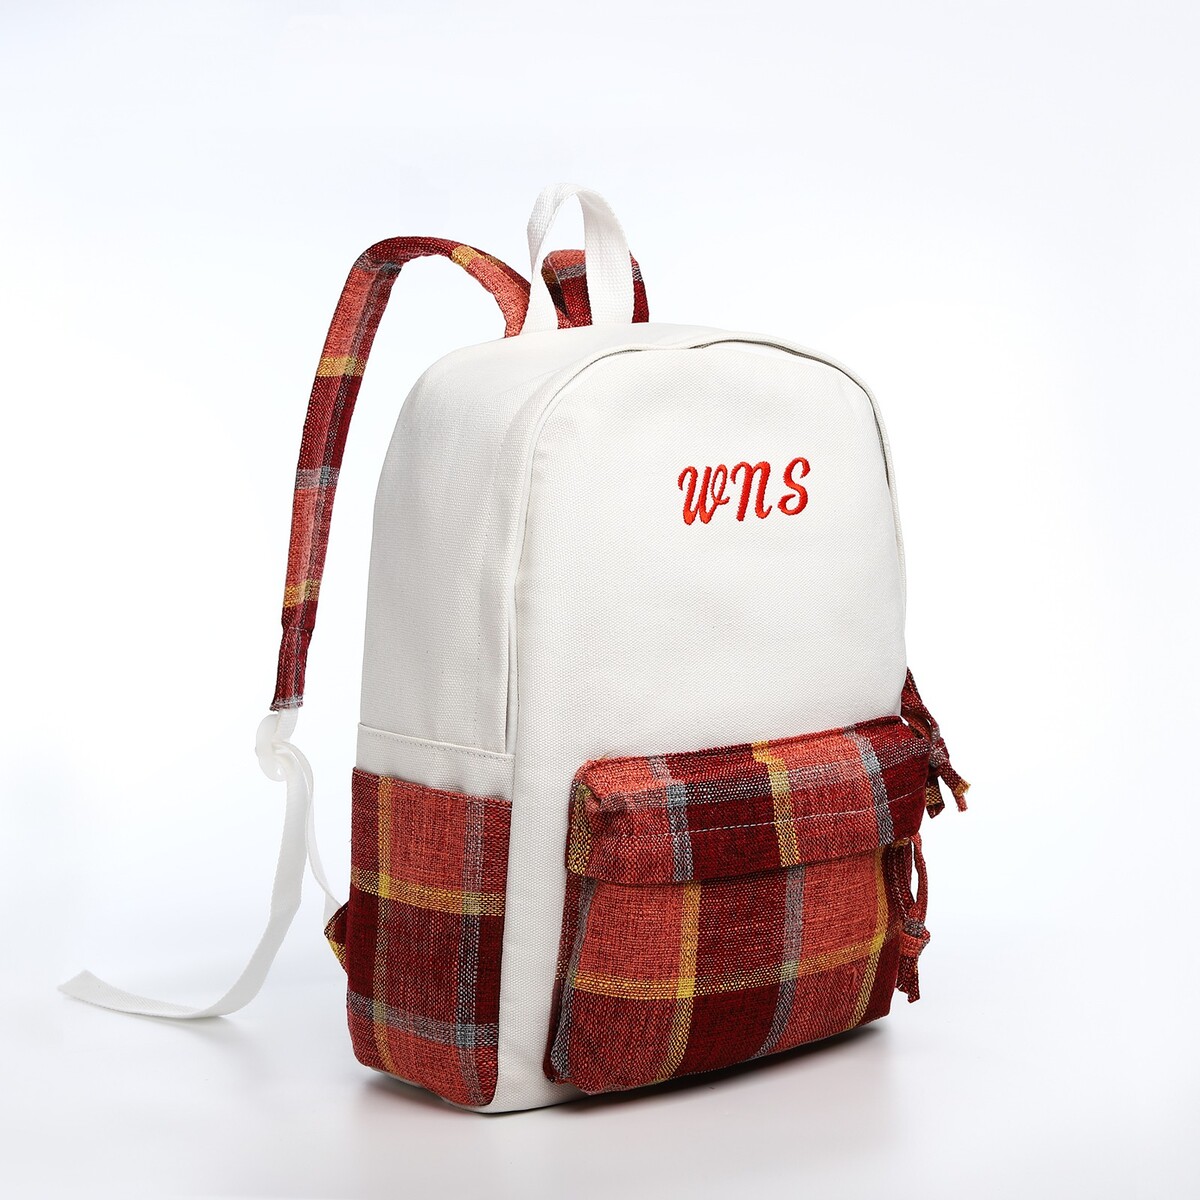 Рюкзак молодежный из текстиля, 3 кармана, цвет белый/коричневый/красный рюкзак молодежный на молнии 3 кармана коричневый